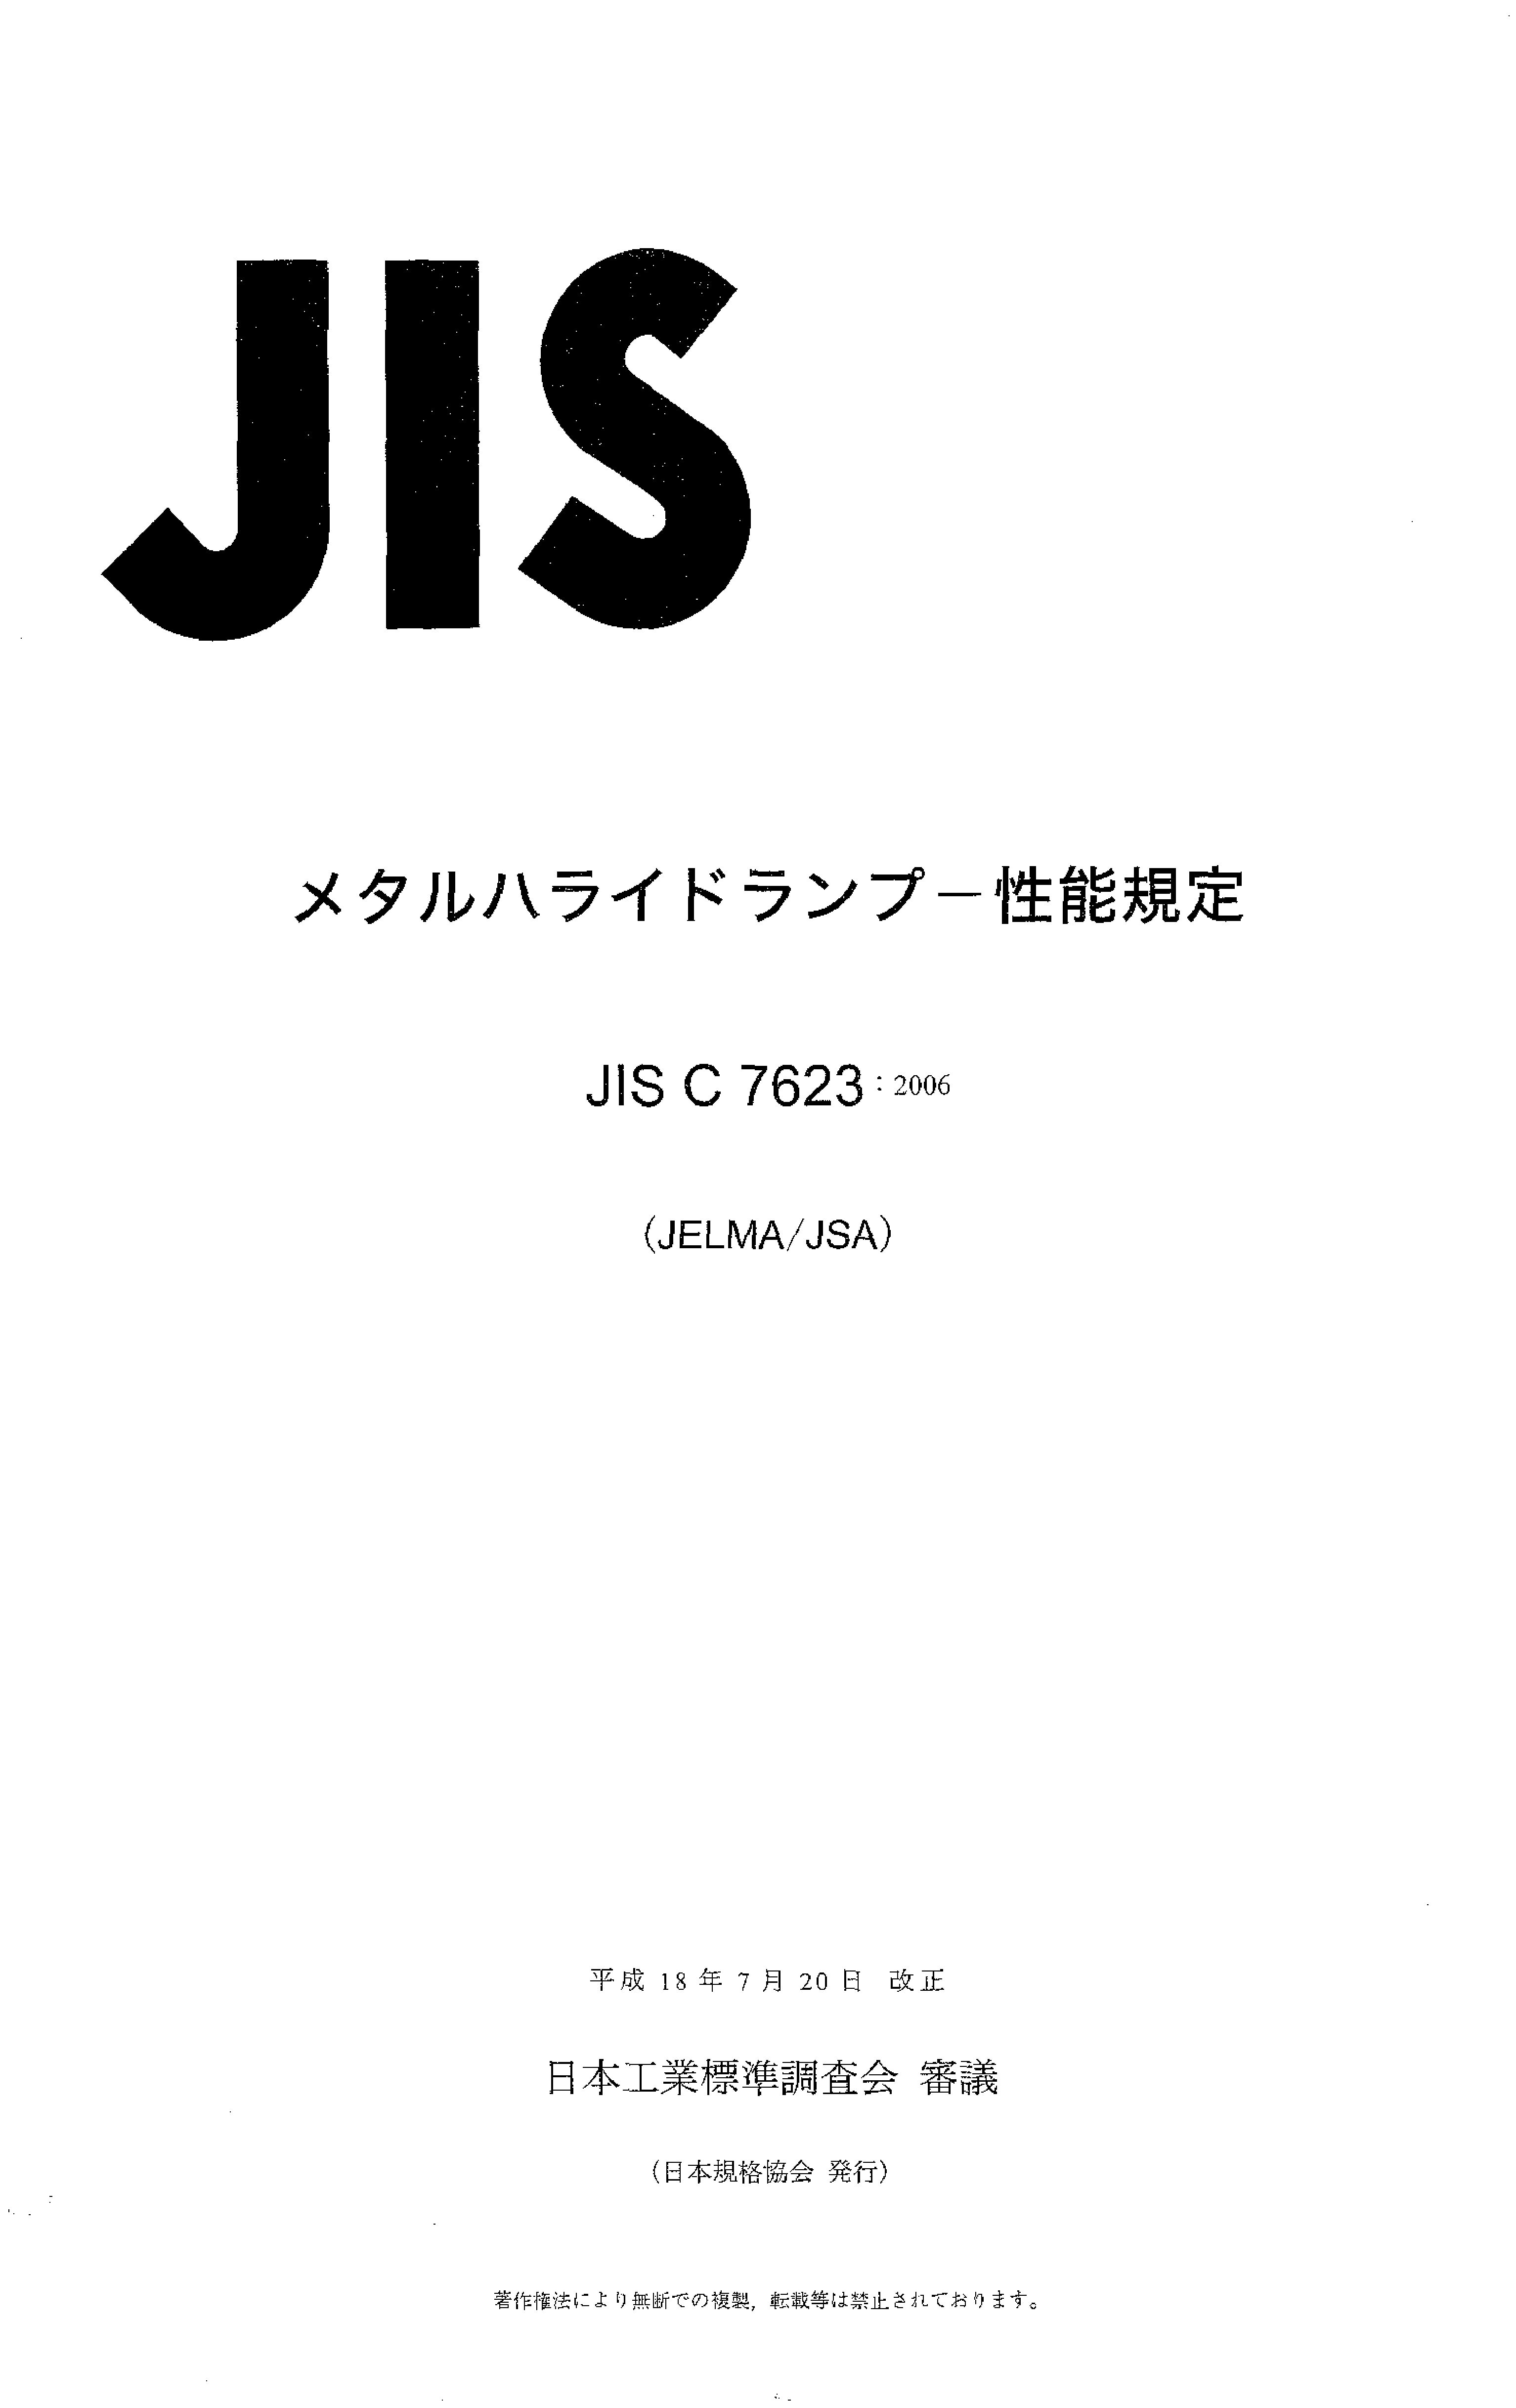 JIS C 7623:2006封面图